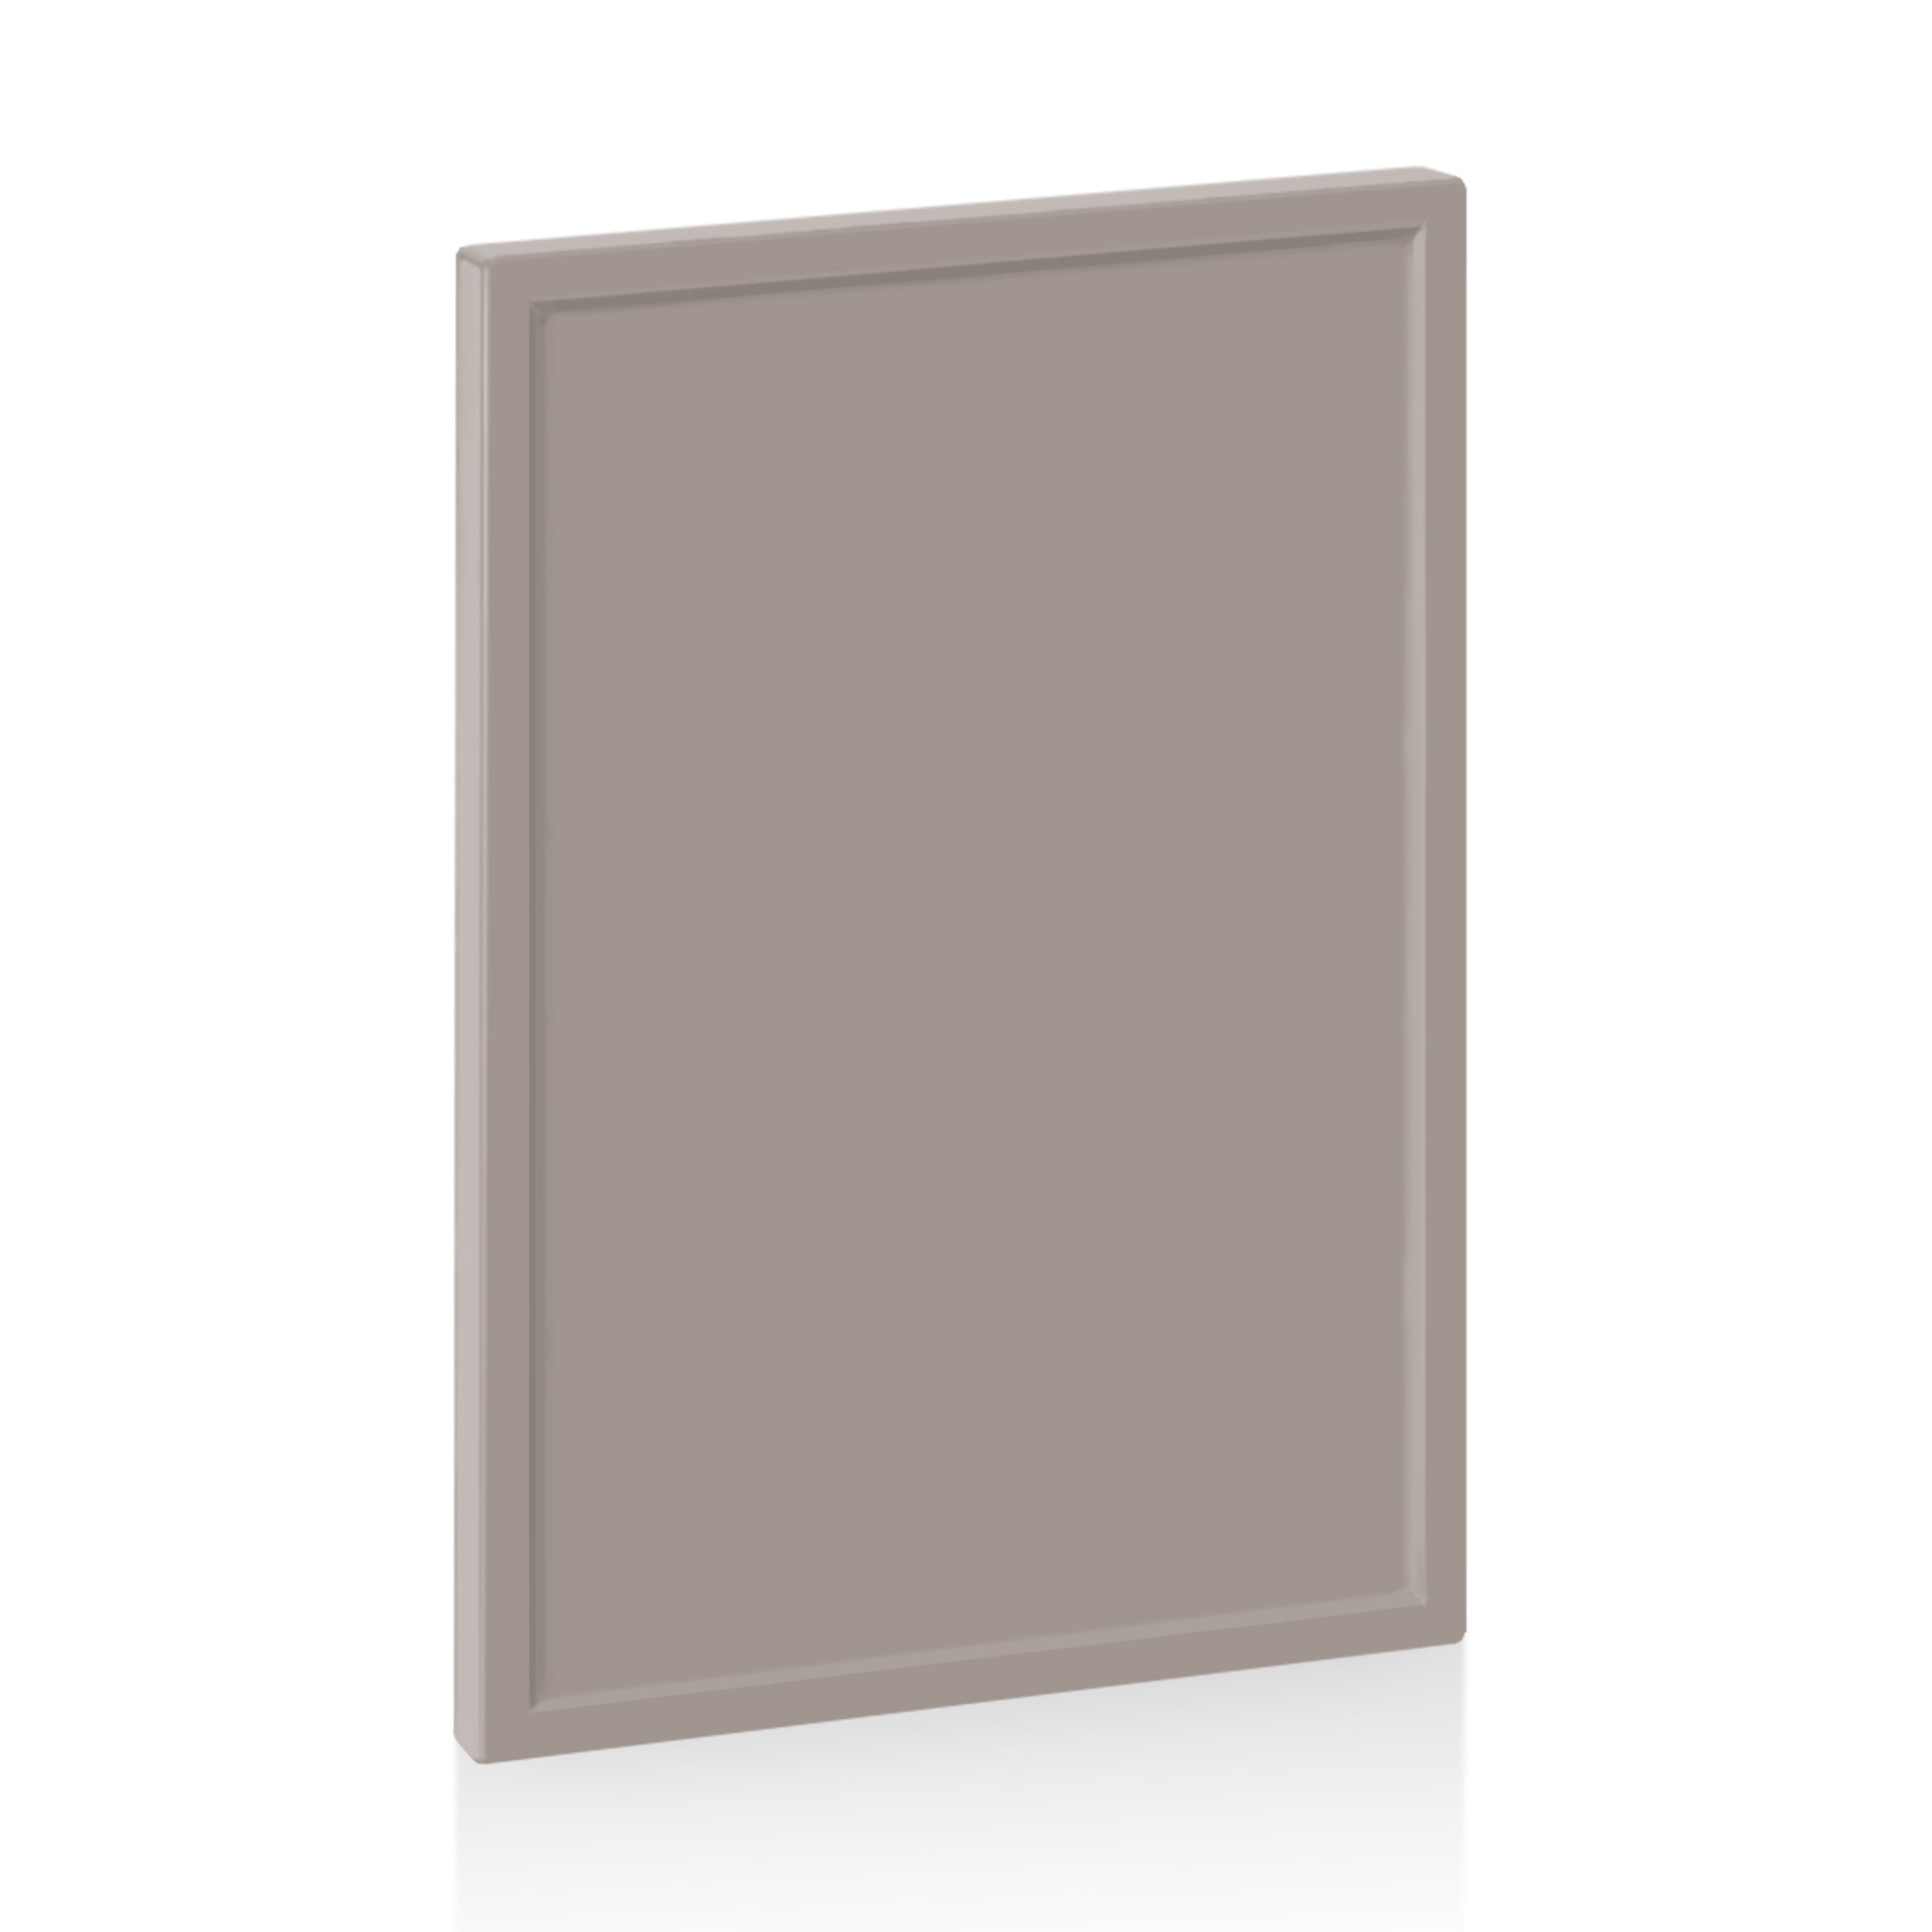 Desert Grey Quarterline Door for Sektion 12" / 30" / Desert Grey